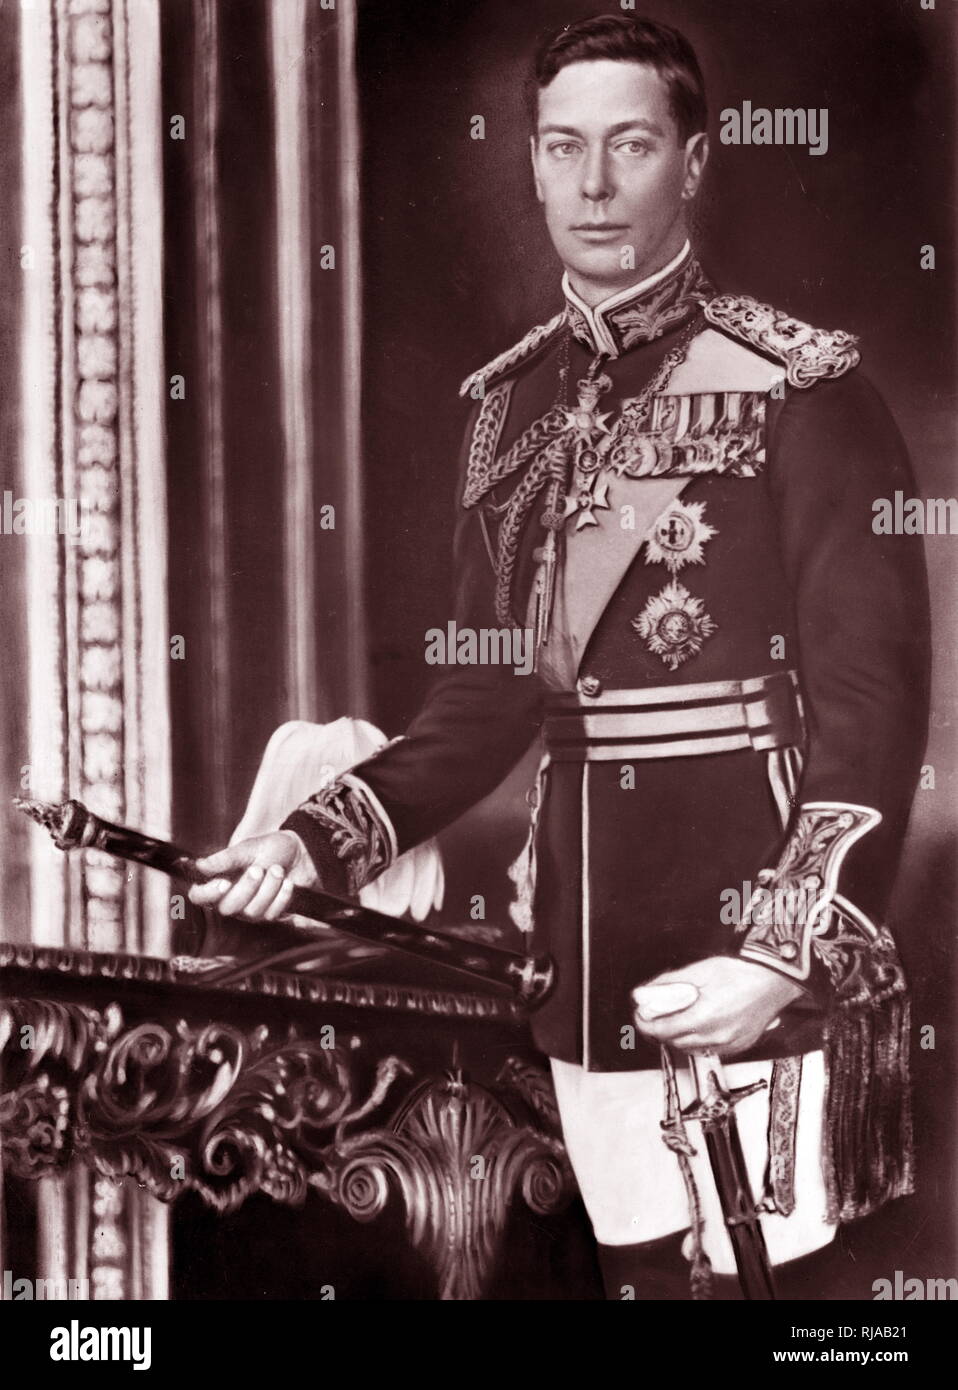 S.m. König George VI des Vereinigten Königreichs in der Uniform eines britischen Feldmarschall, 1937. George VI (Albert Frederick Arthur George). (1895-1952), König von Großbritannien und die Dominions des British Commonwealth von 1936 bis zu seinem Tod. Er war der letzte Kaiser von Indien und der erste Leiter des Commonwealth. Stockfoto